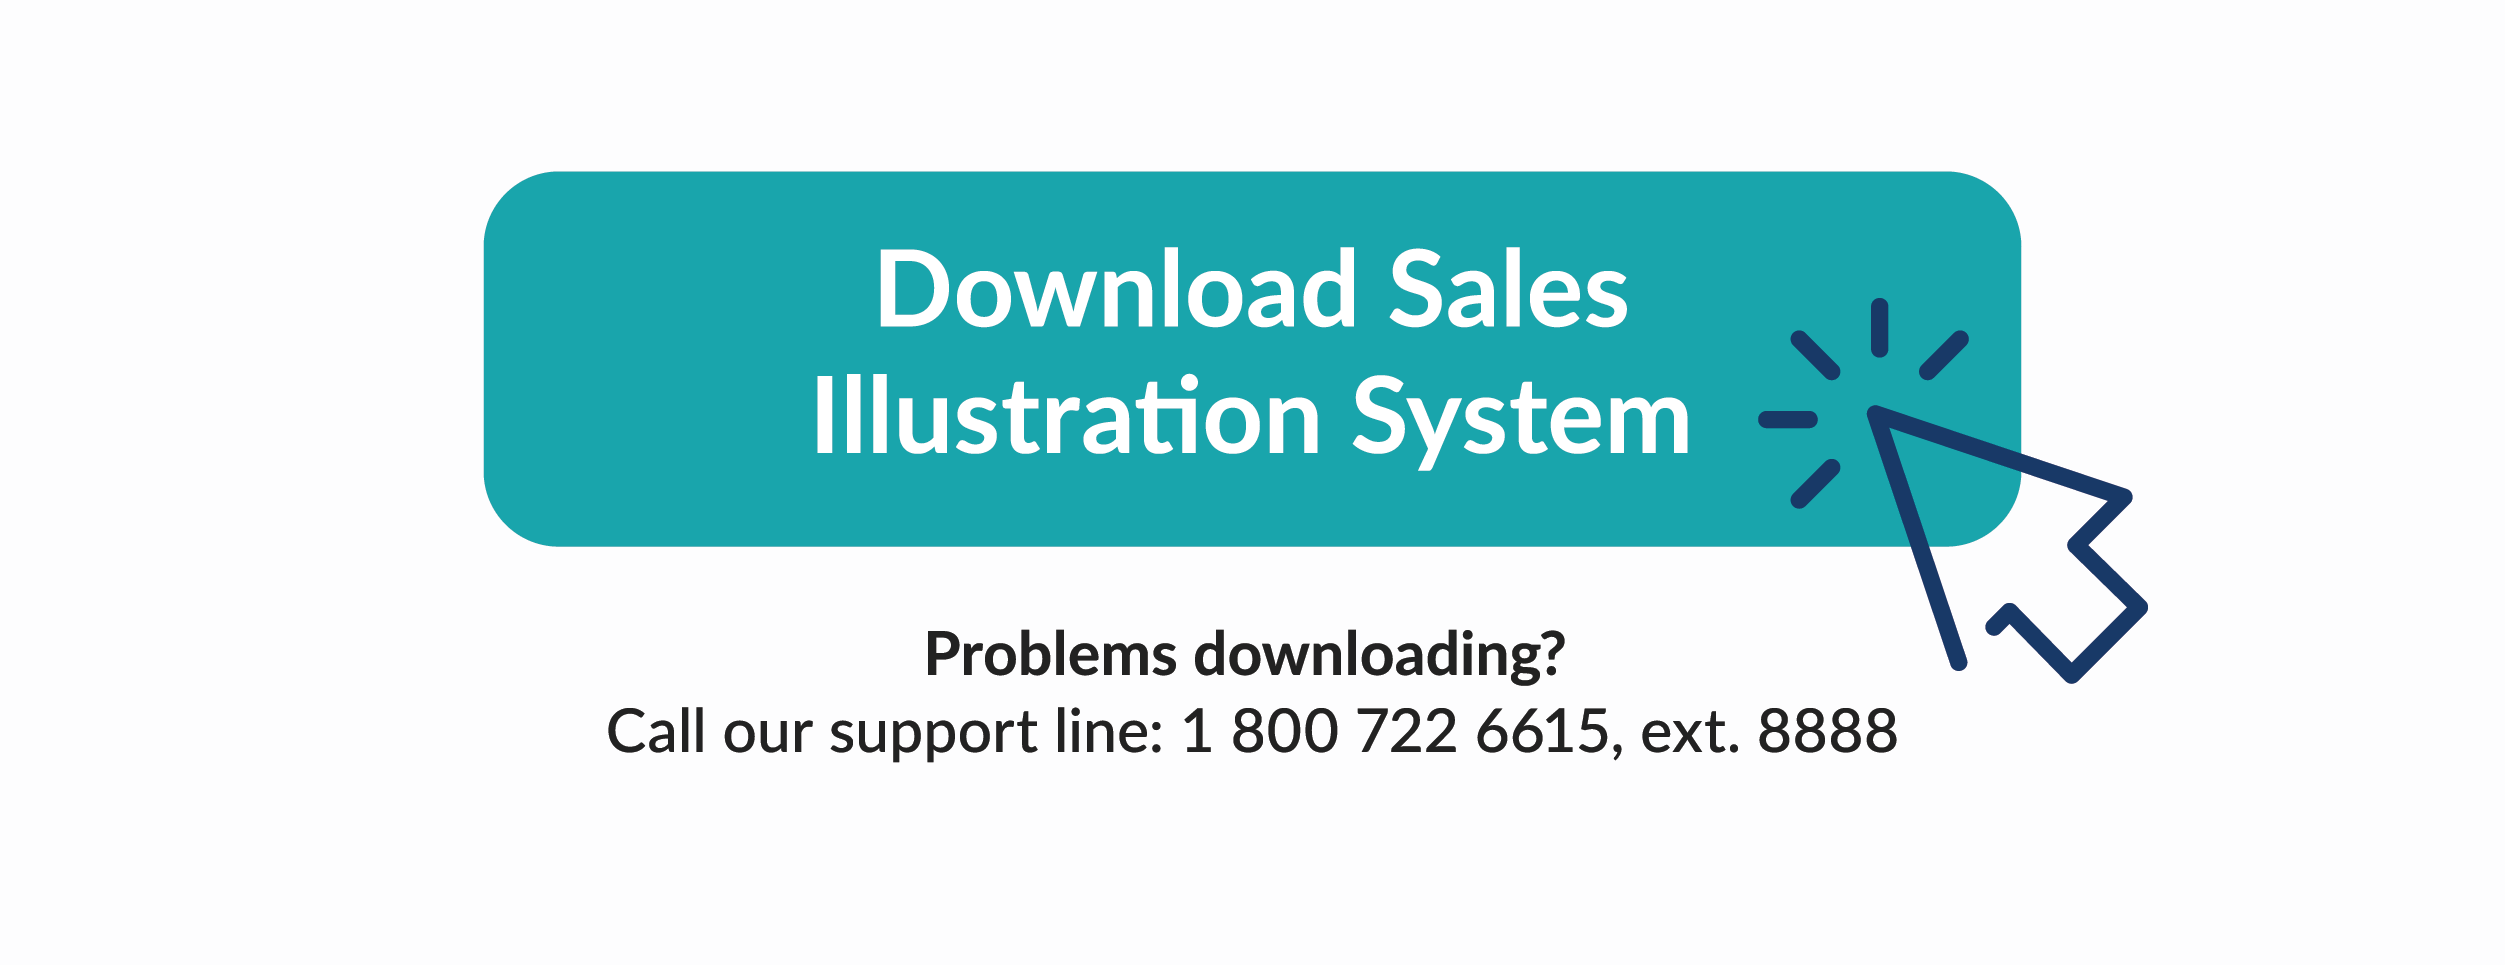 Download Sales Illustration System